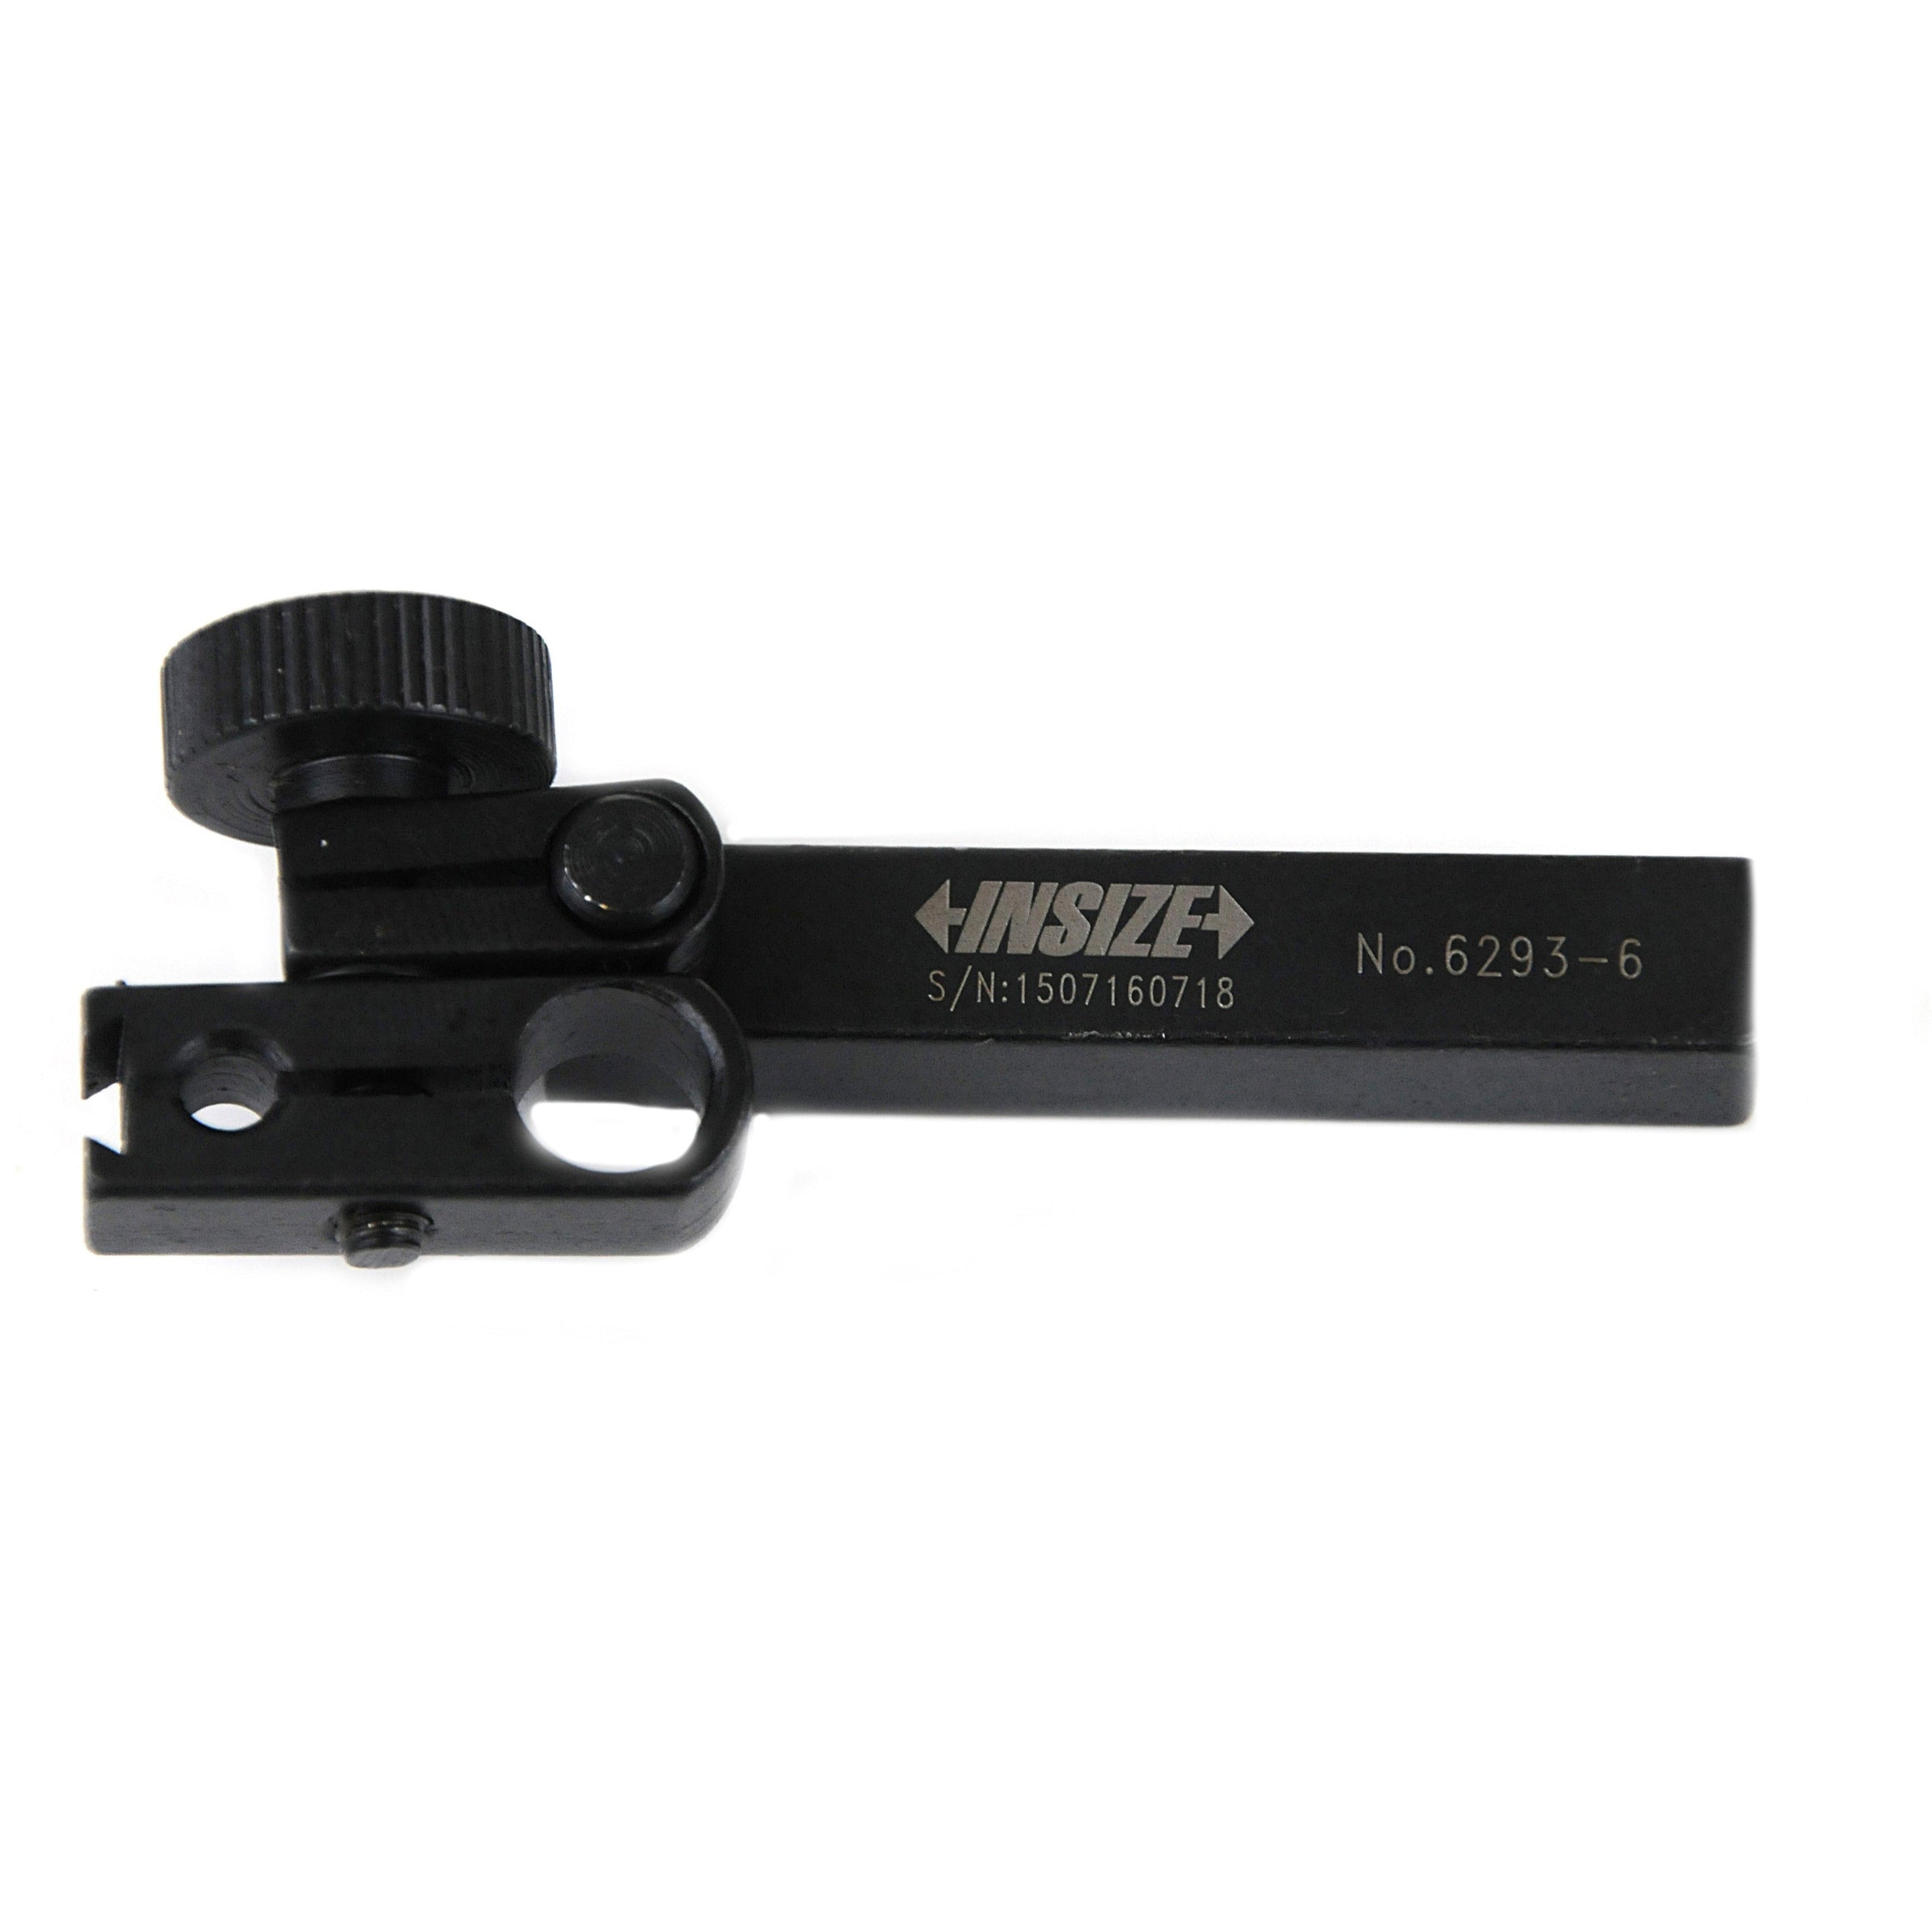 Insize Dial Test Gauge Indicator Holder Rectangle 50mm Stem Series 6293-6